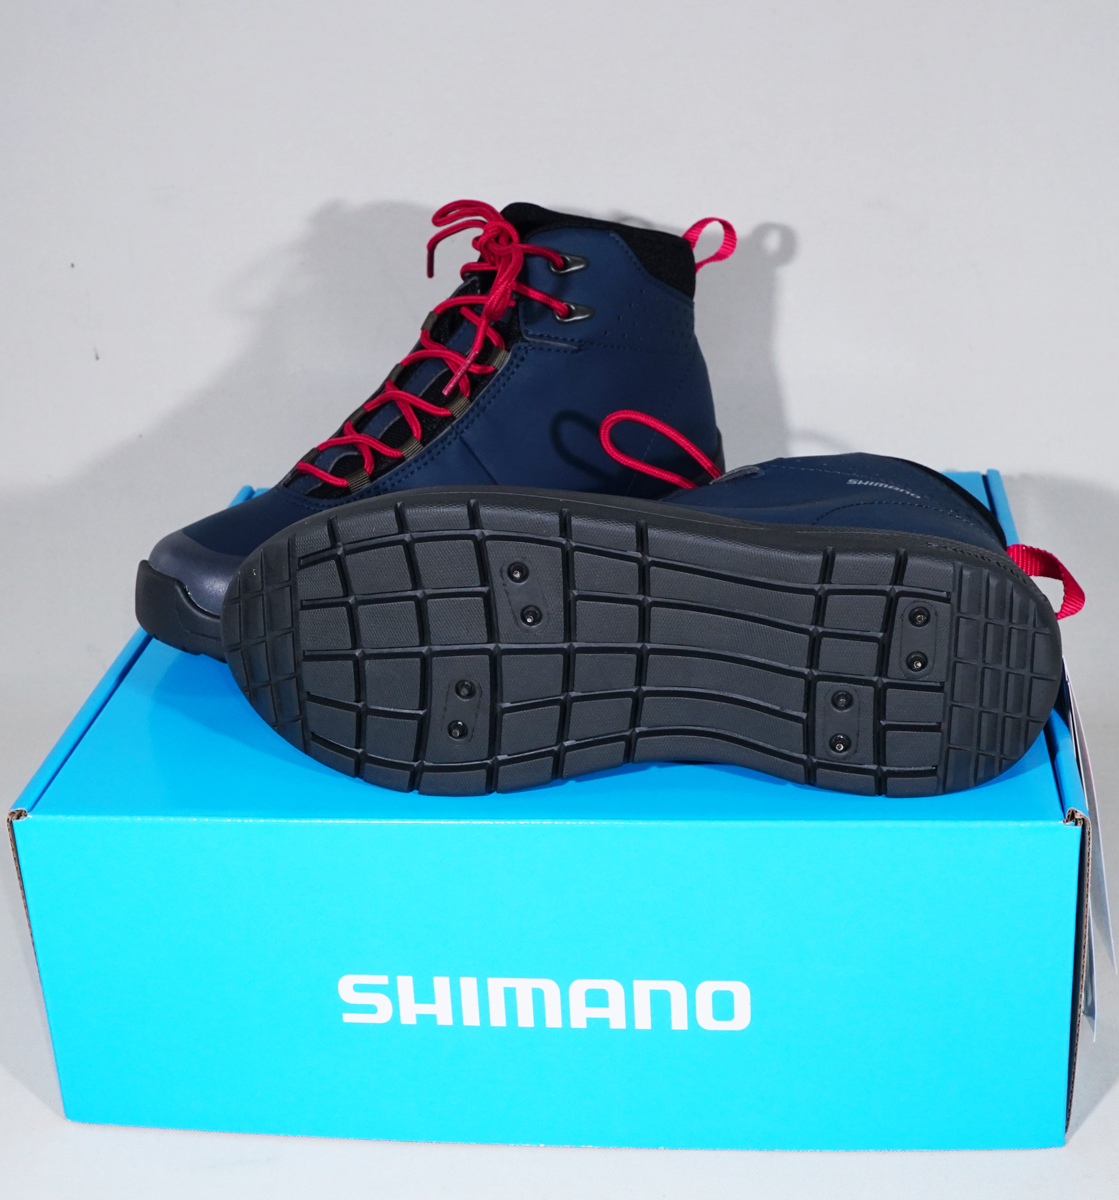  Shimano FS-060Q глубокий blue black 25.0cm dry защита * радиальный шиповки обувь ( - ikatto модель )